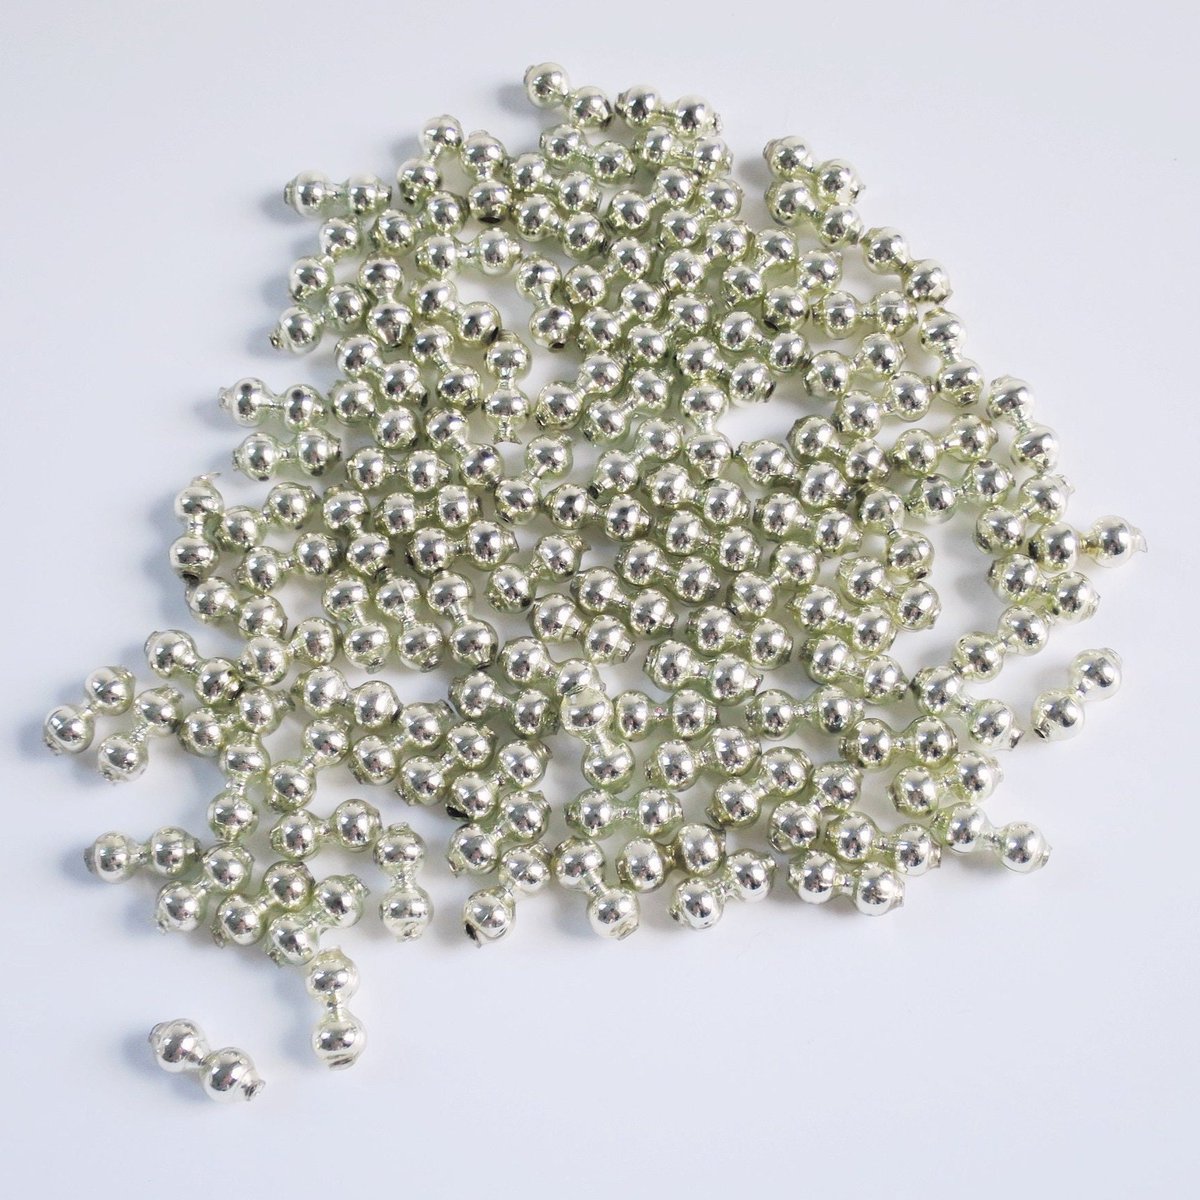 Lot of 50+ Silver Mercury Glass Beads, 1/2' Double Glass Beads, Glass Garland Supplies, Dollhouse Christmas tuppu.net/68f49378 #Welcome2023 #TMTinsta #PinItSwirlingO11 #BuyonSocial #HolidayCraftSupply